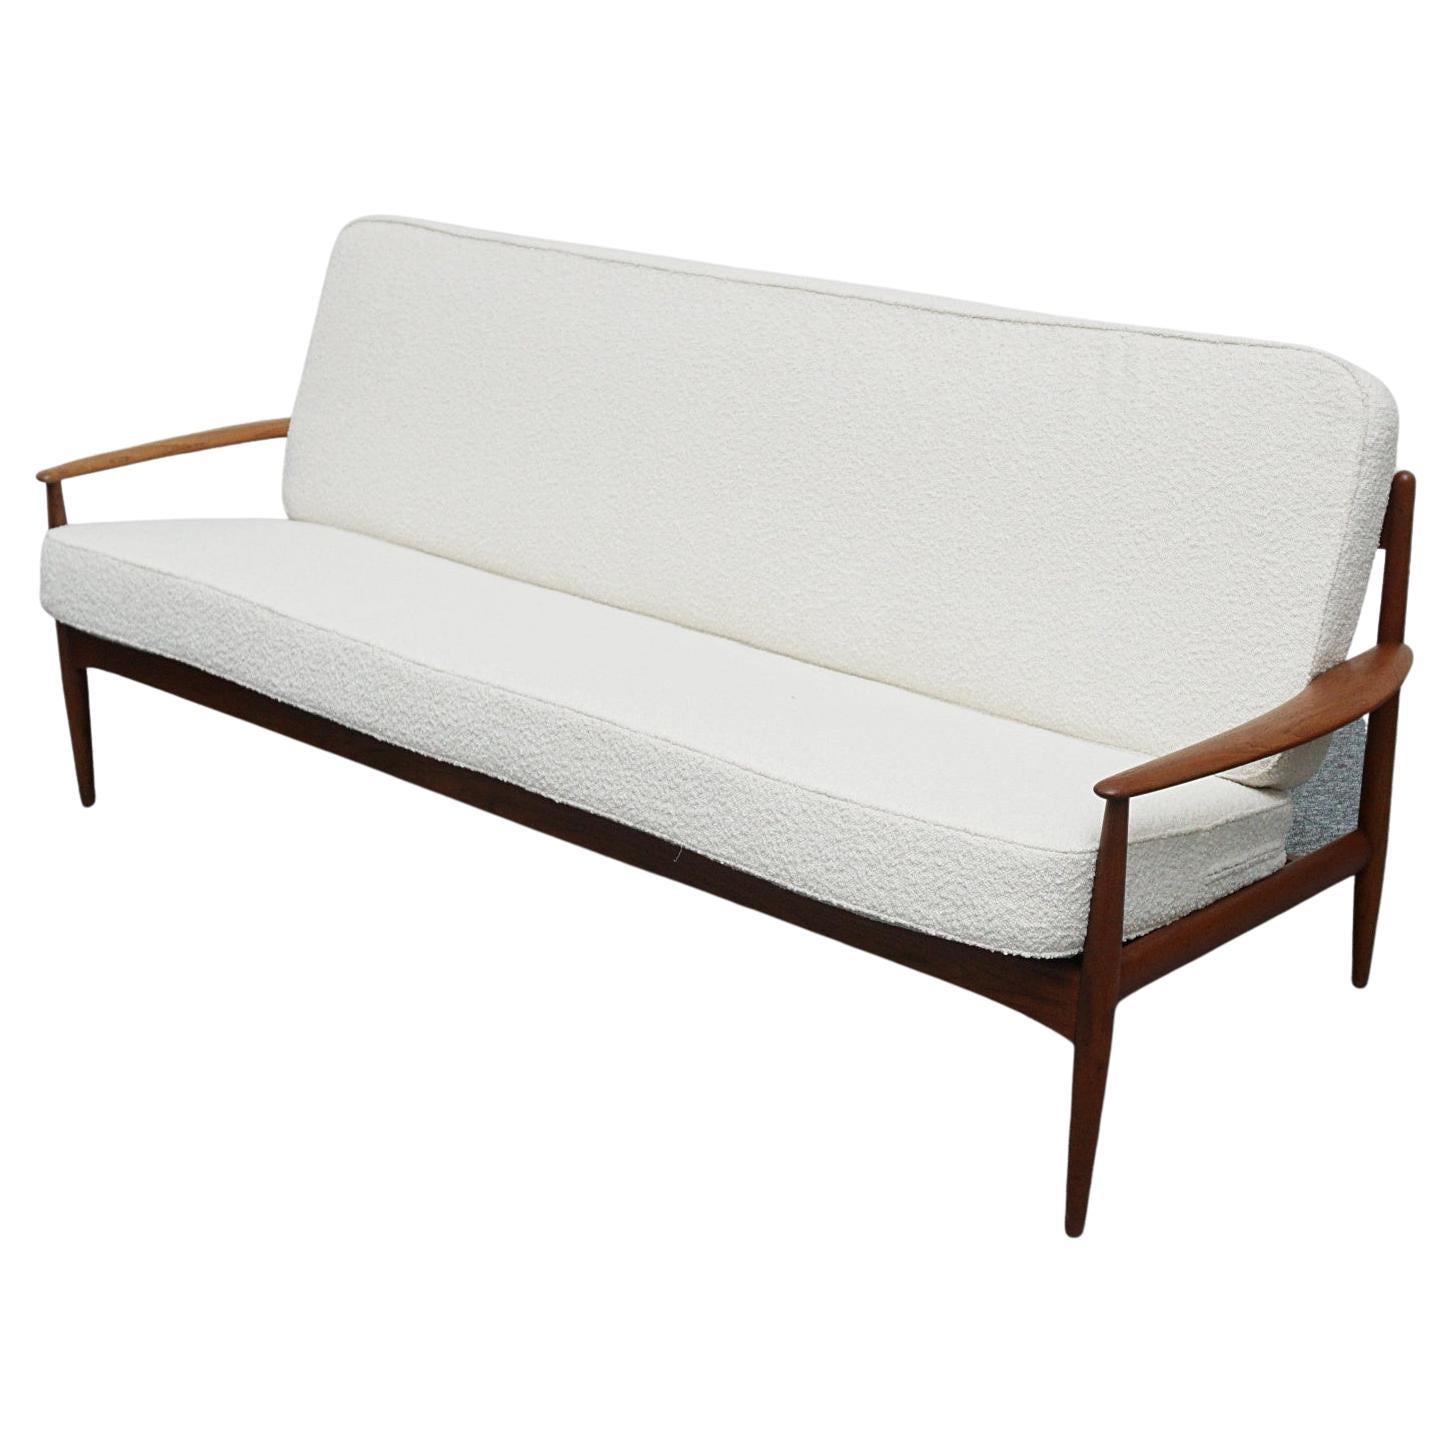 1960's Mid-Century Sofa Designed by Grete Jalk for France & Son Denmark